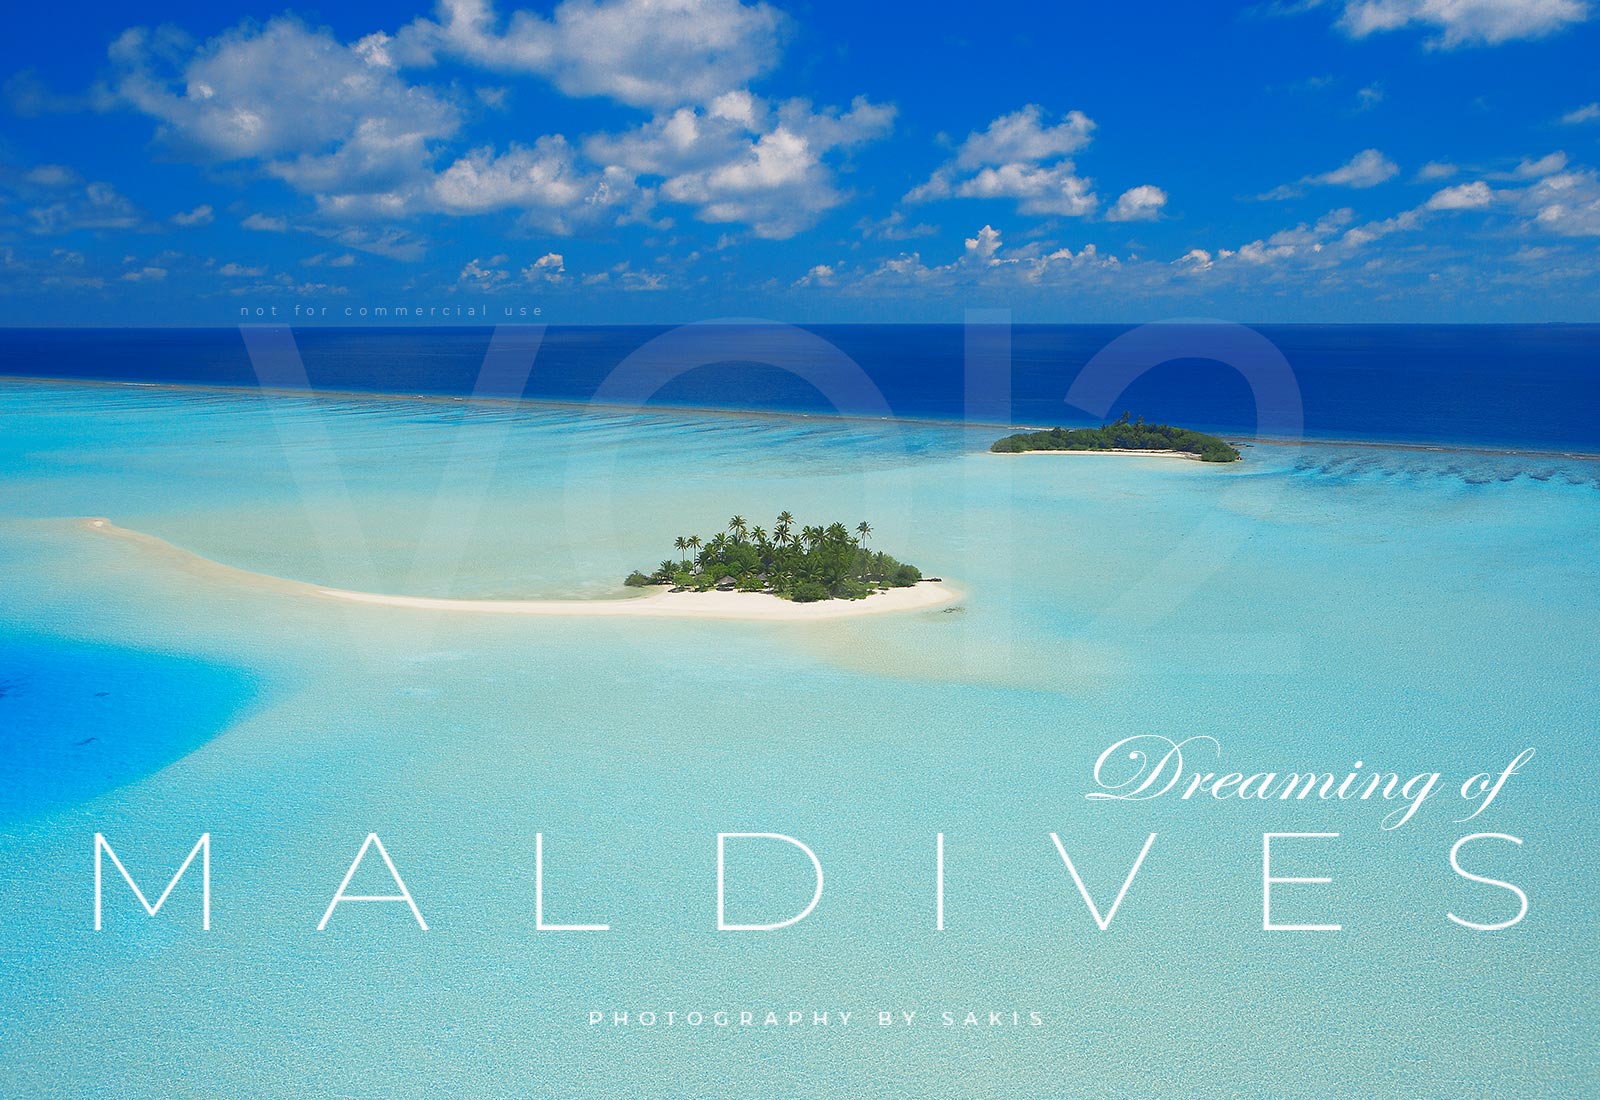 maldives photo book 2